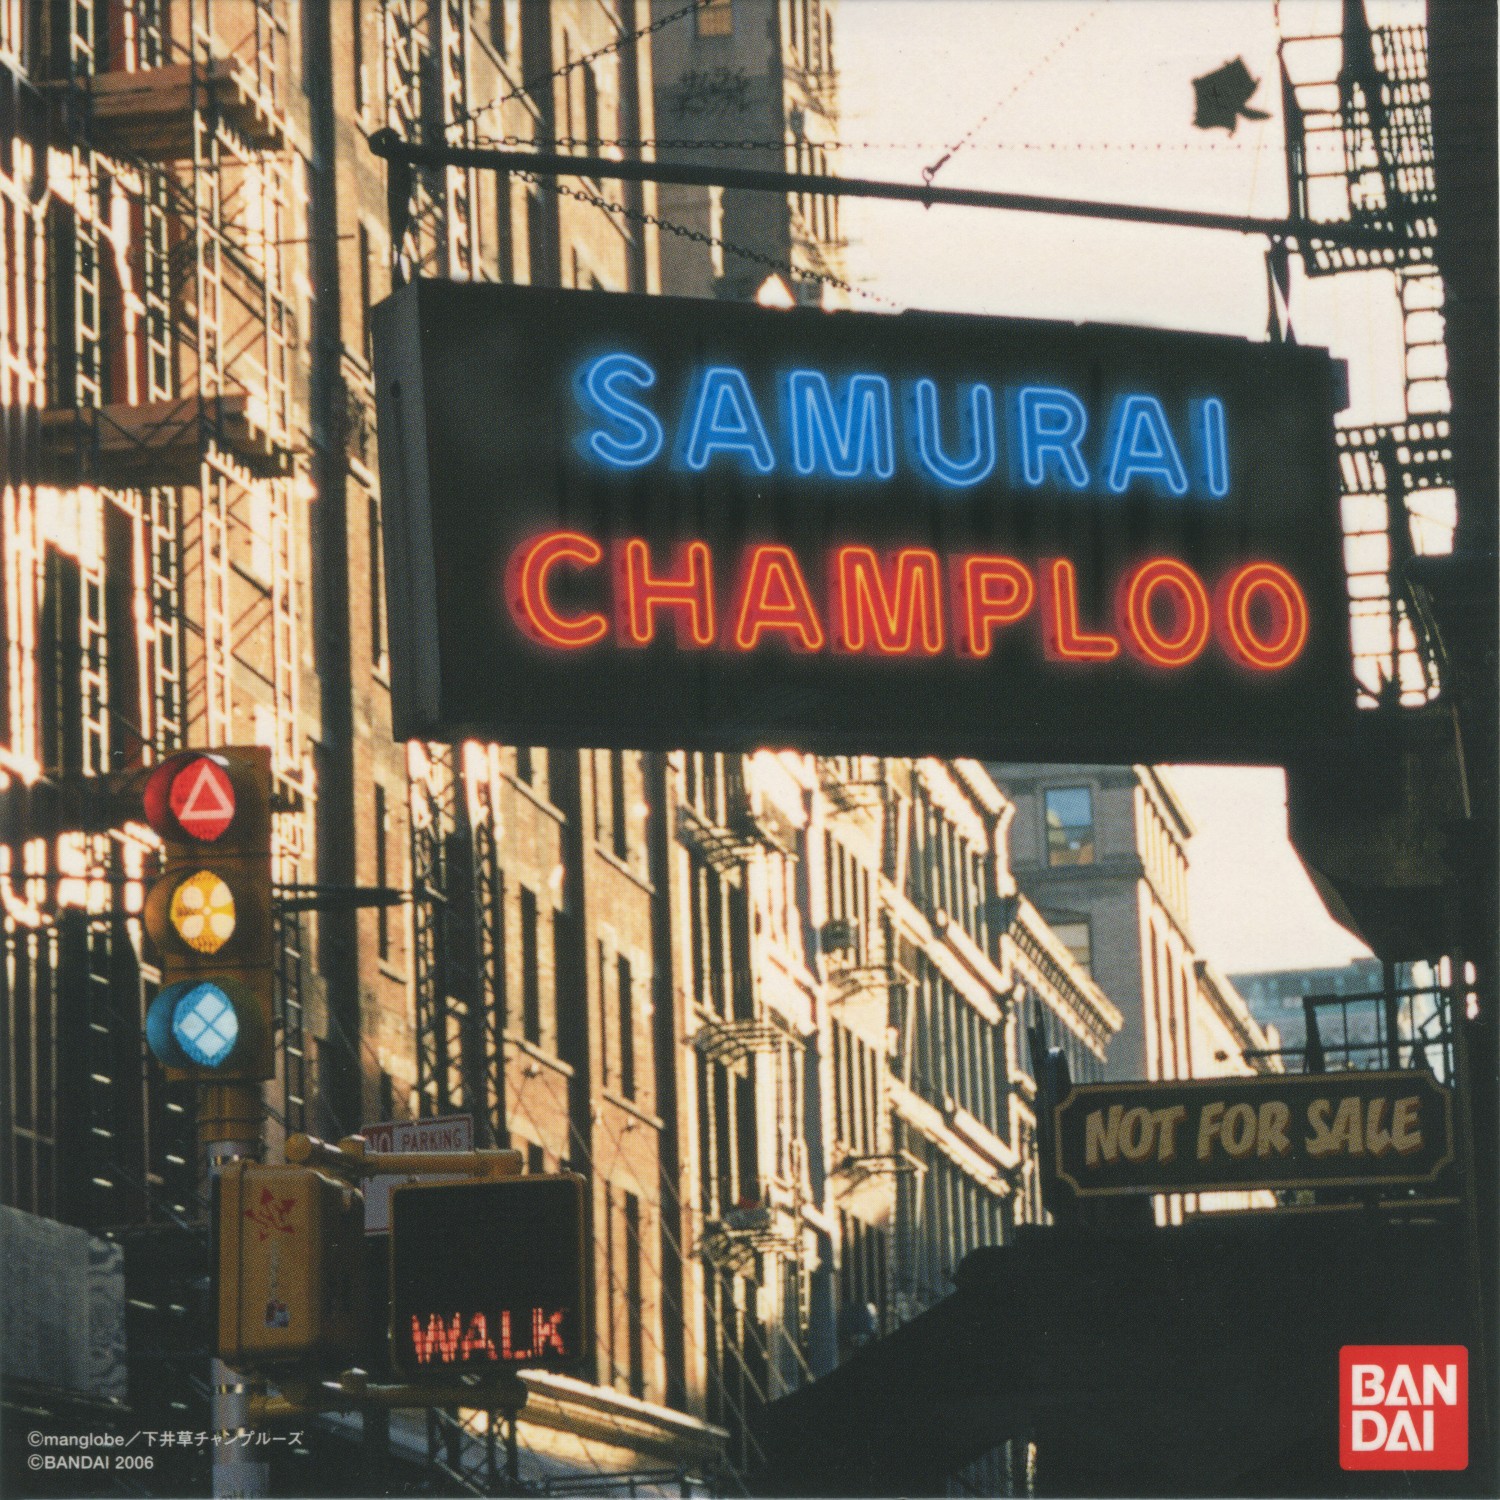 SAMURAI CHAMPLOO Rhythm Track CD | Suda51 Wiki | Fandom